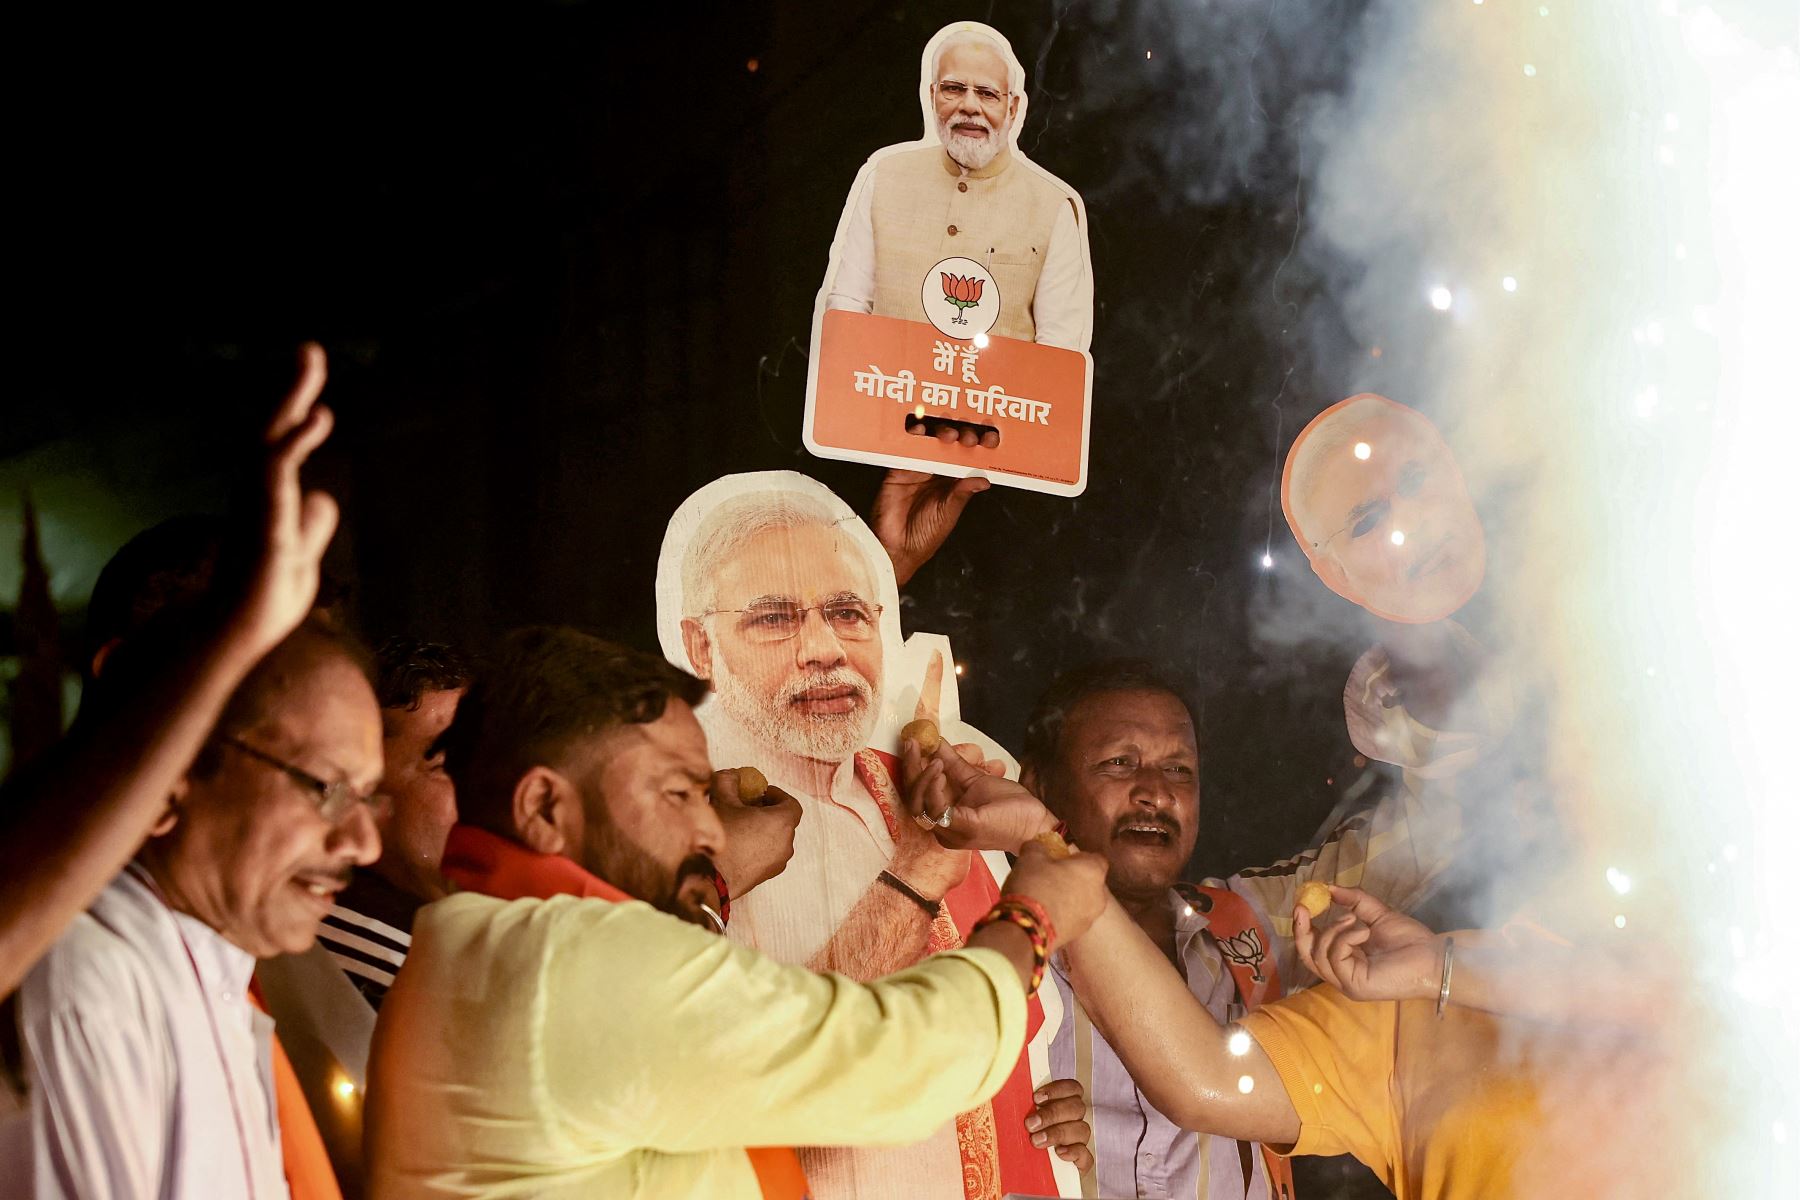 Partidarios que portaban retratos de Narendra Modi, líder del Partido Bharatiya Janata , estallaron petardos en Varanasi, para celebrar después de que prestó juramento como Primer Ministro de la India para un tercer mandato durante la ceremonia de juramento en el palacio presidencial. Rashtrapati Bhavan en Nueva Delhi.
Foto: AFP